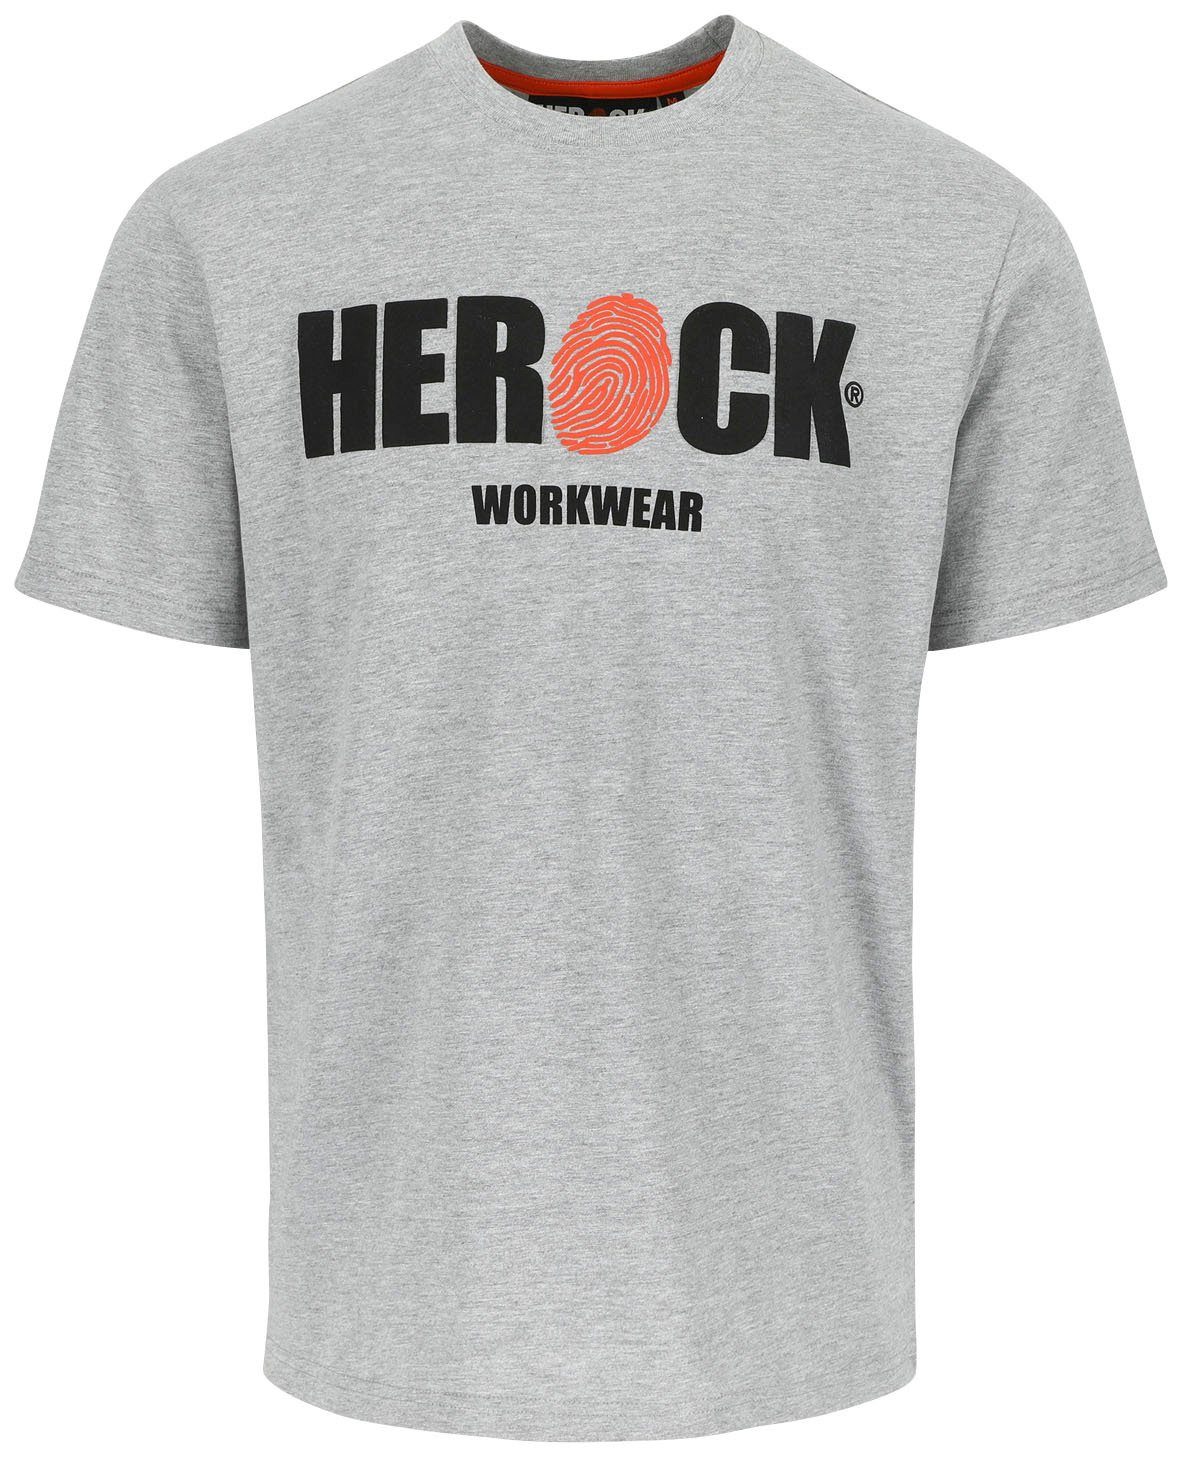 Herock T-Shirt ENI Baumwolle, Rundhals, mit Herock®-Aufdruck, angenehmes Tragegefühl grau | T-Shirts